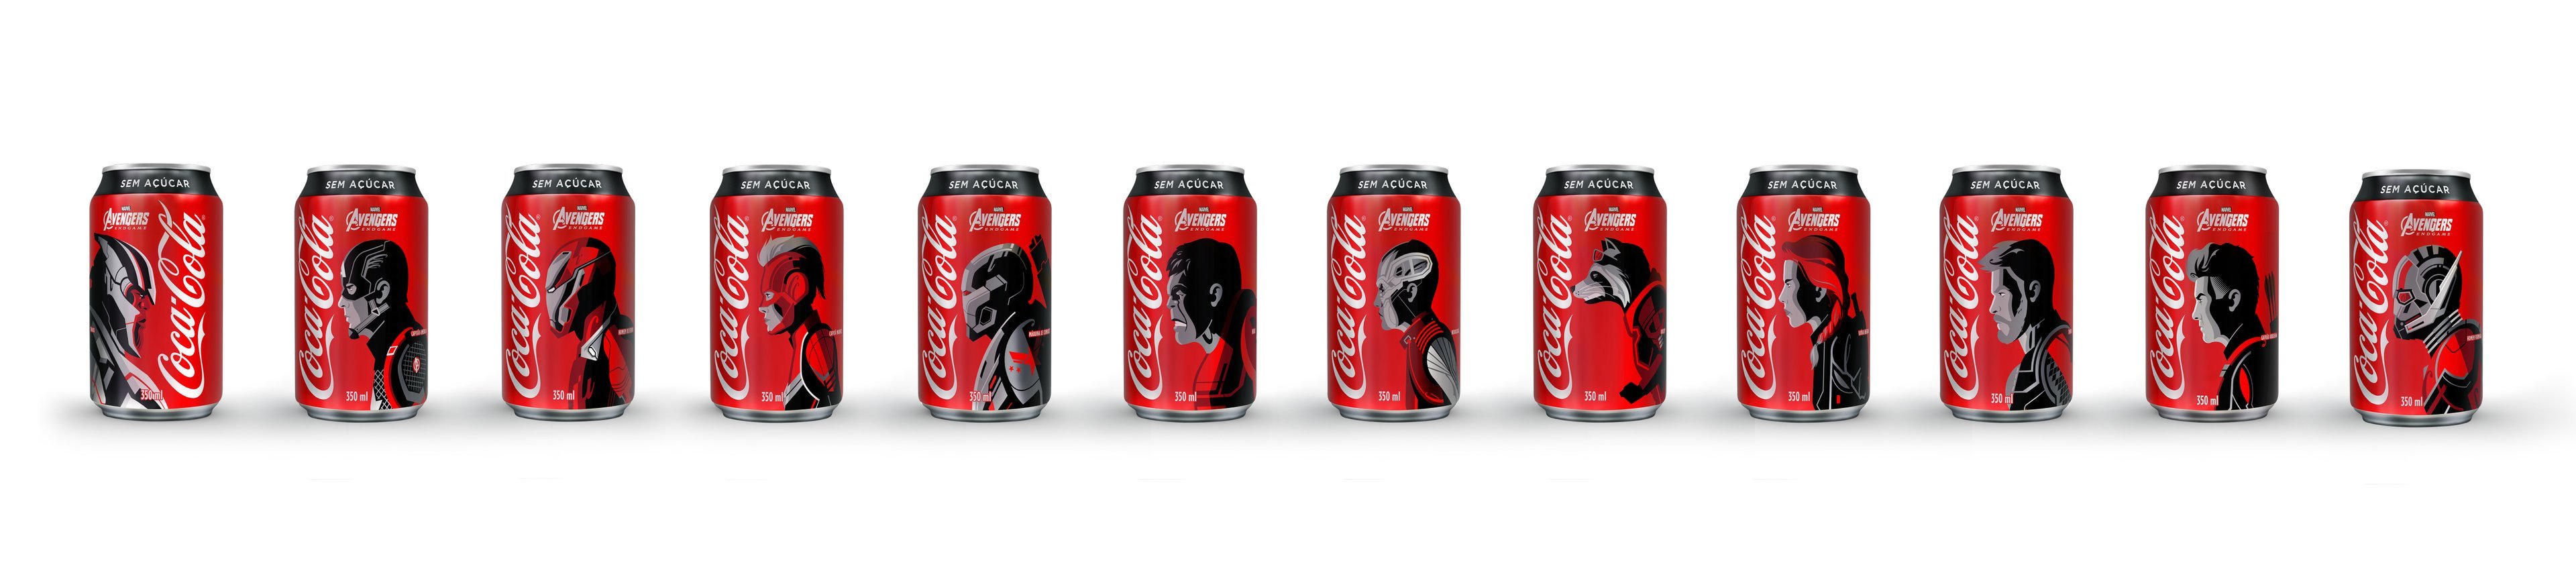 Latas de Coca-Cola: parceria com Marvel e filme Os Vingadores